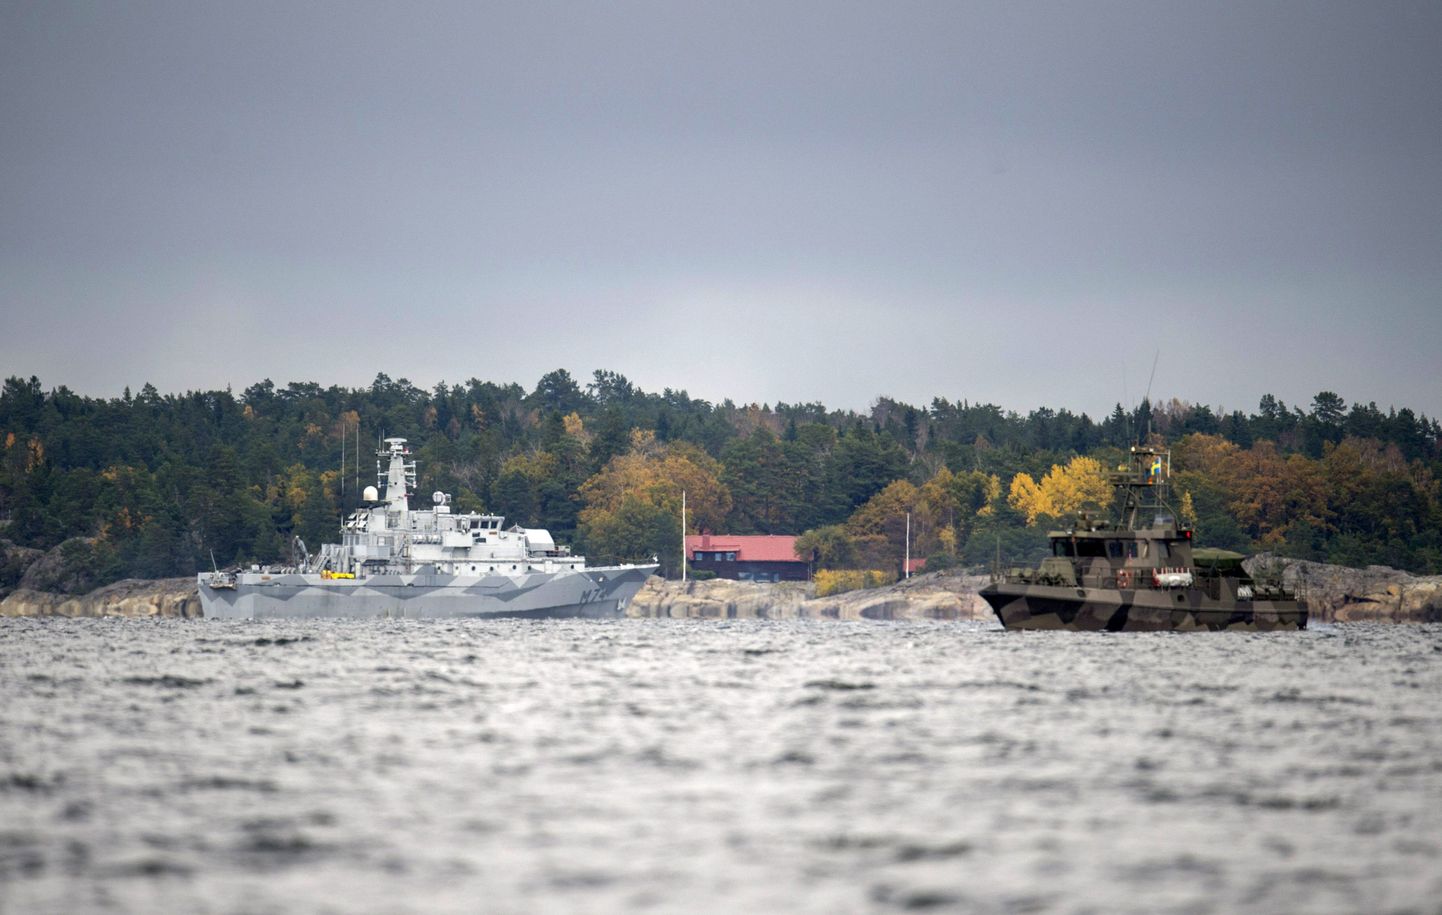 Rootsi mereväe alused otsimas 2014. aasta oktoobris Stockholmi lähistelt välisriigi allveelaeva